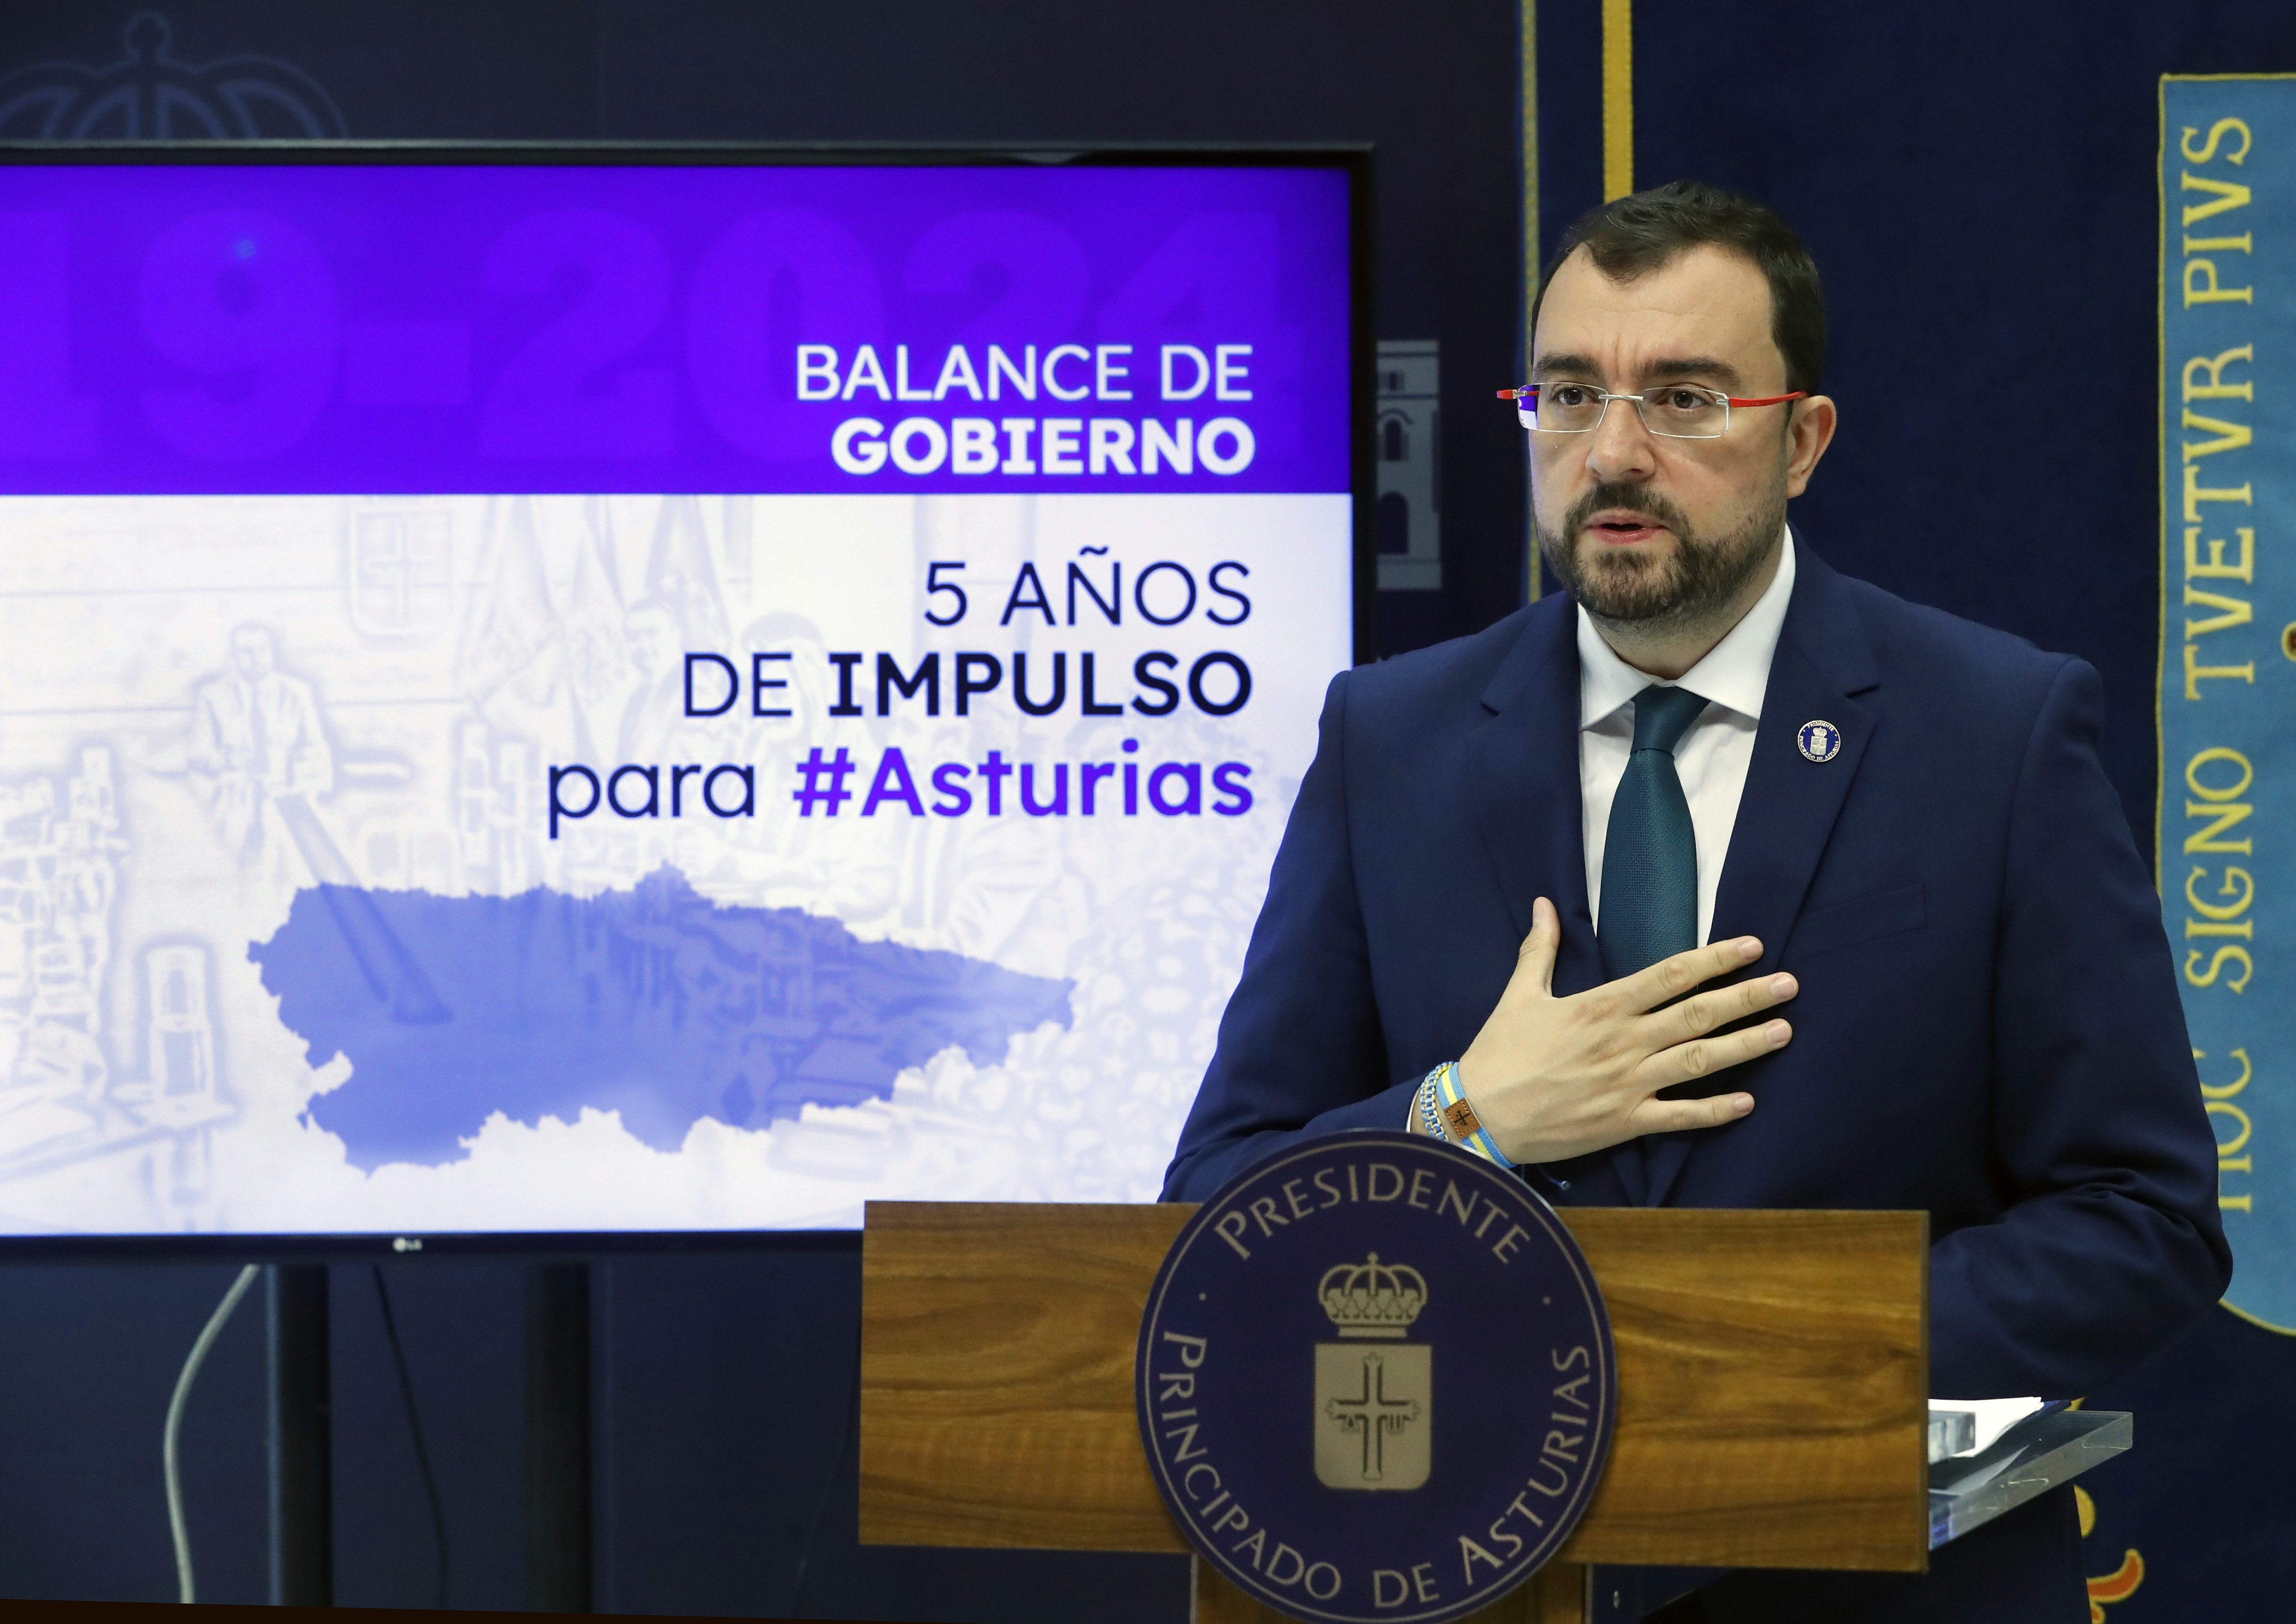 Imagen - Barbón hace balance de un lustro de gobierno: “Cinco años de hechos que demuestran que Asturias gana”